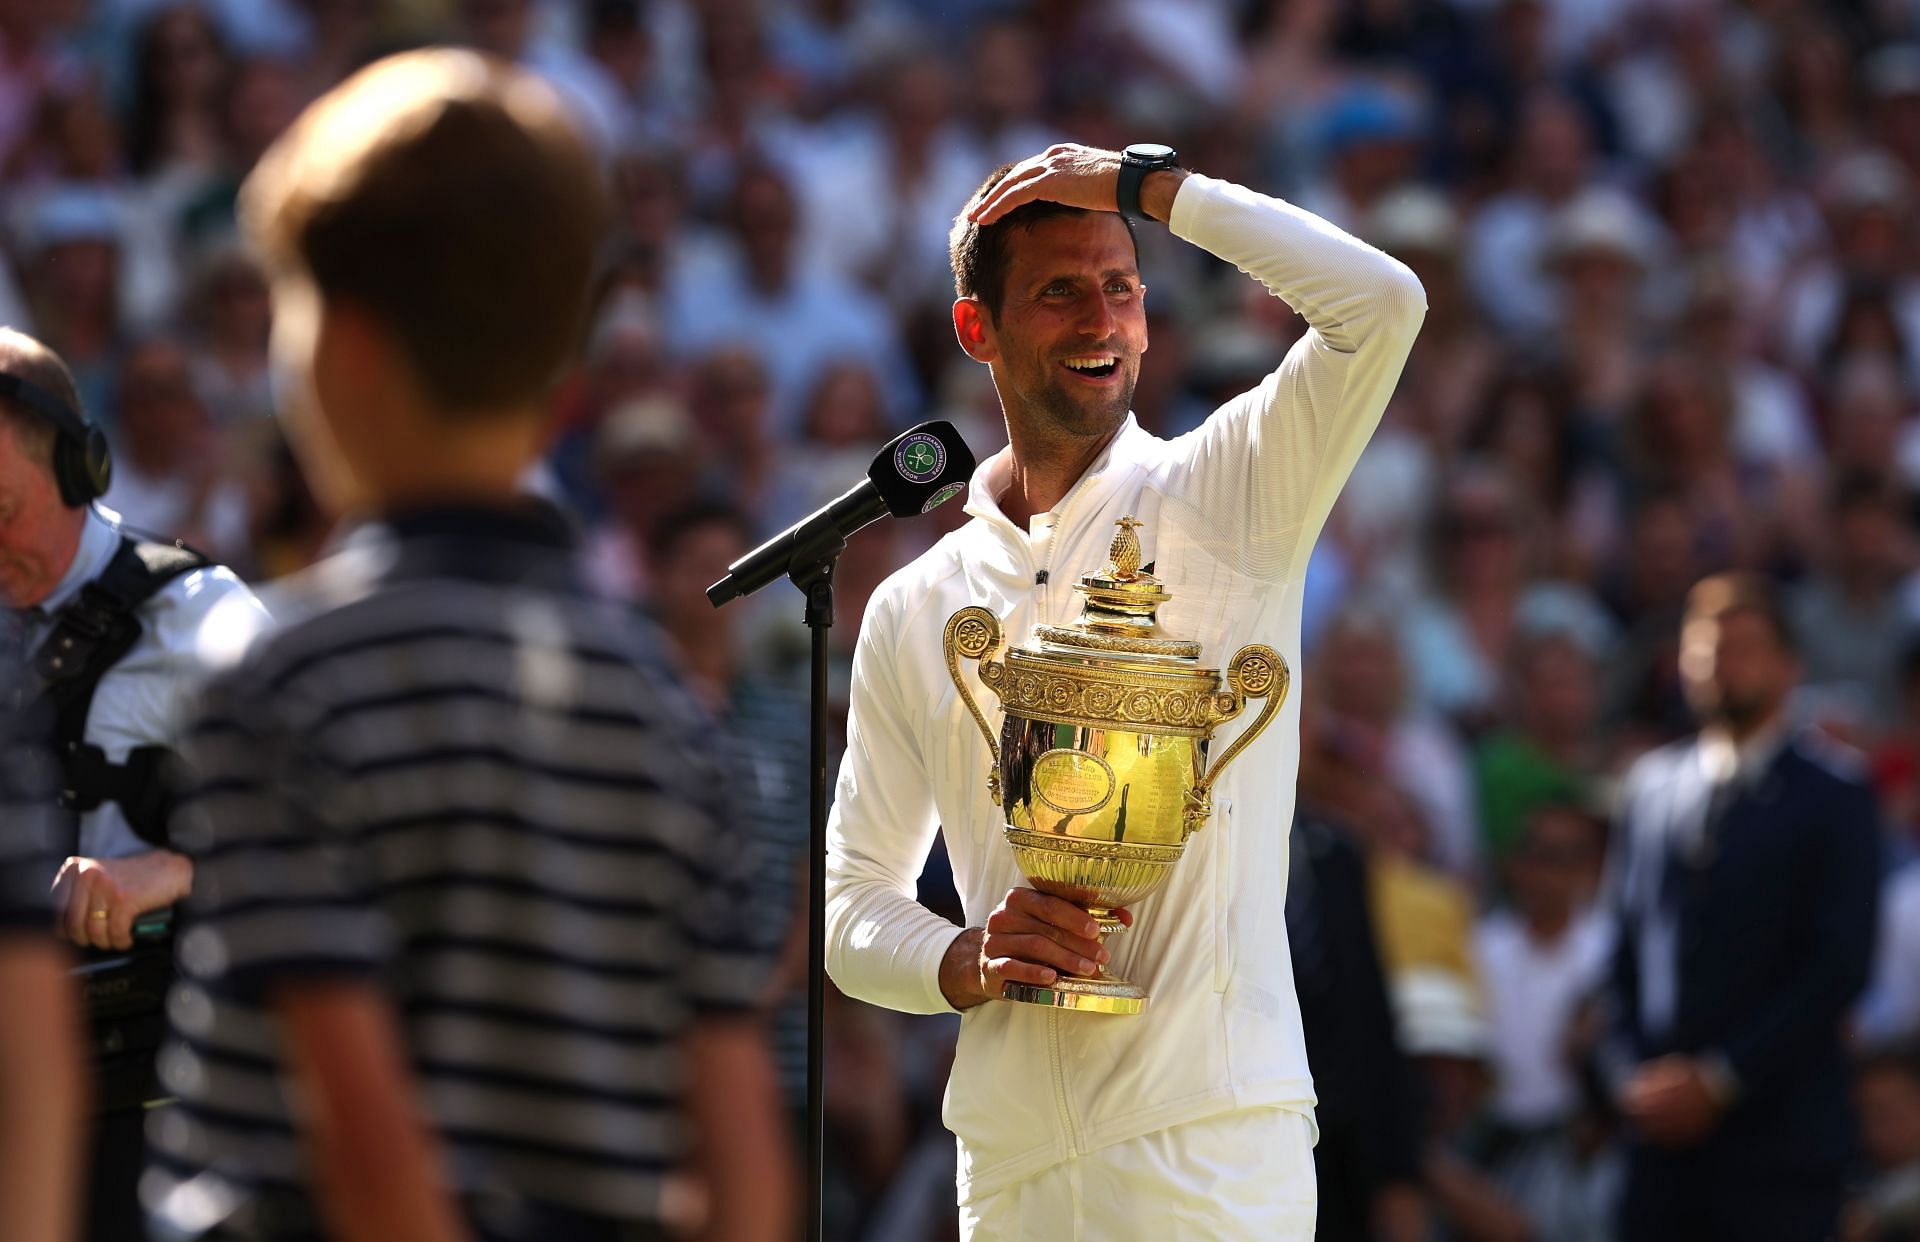 Novak Djokovic at the Wimbledon 2022 tennis tournament